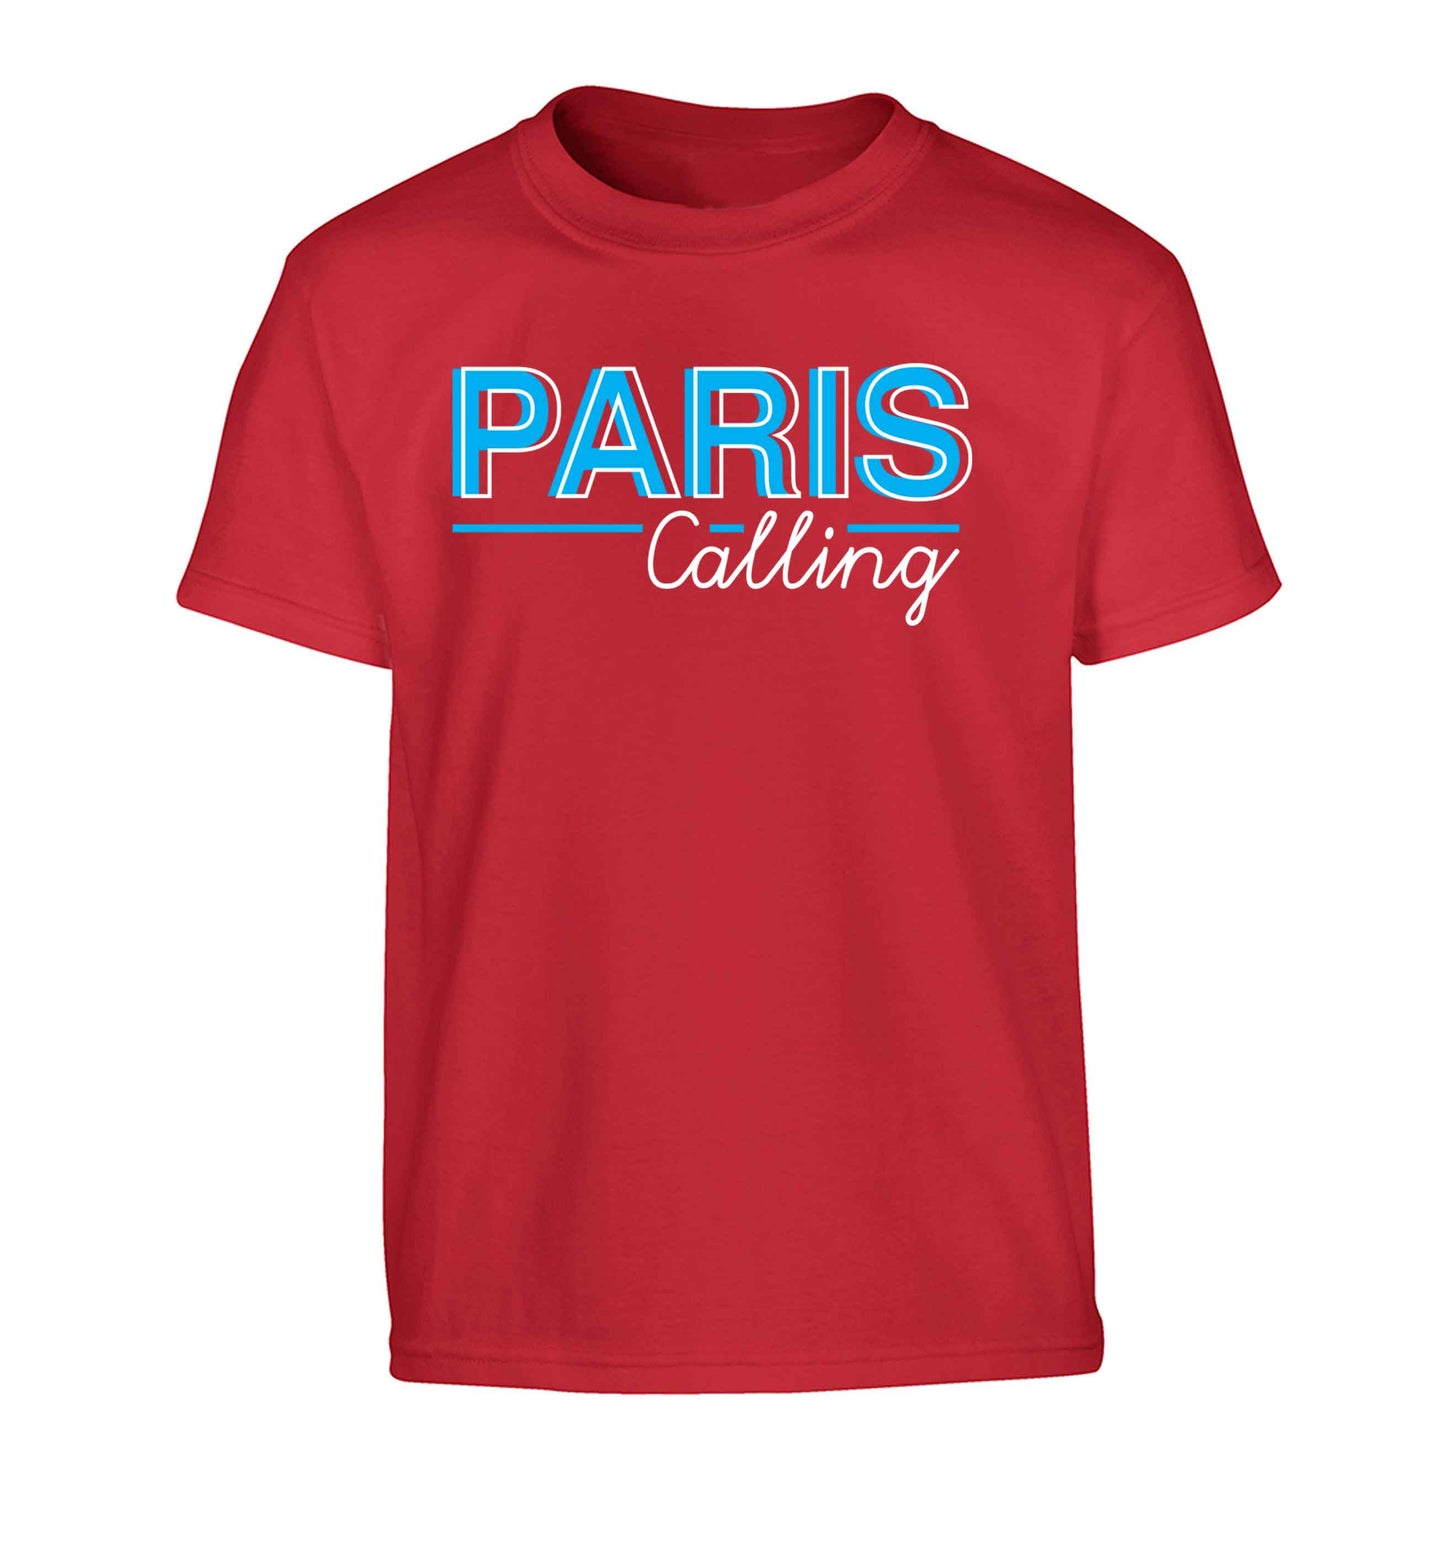 Paris calling Children's red Tshirt 12-13 Years